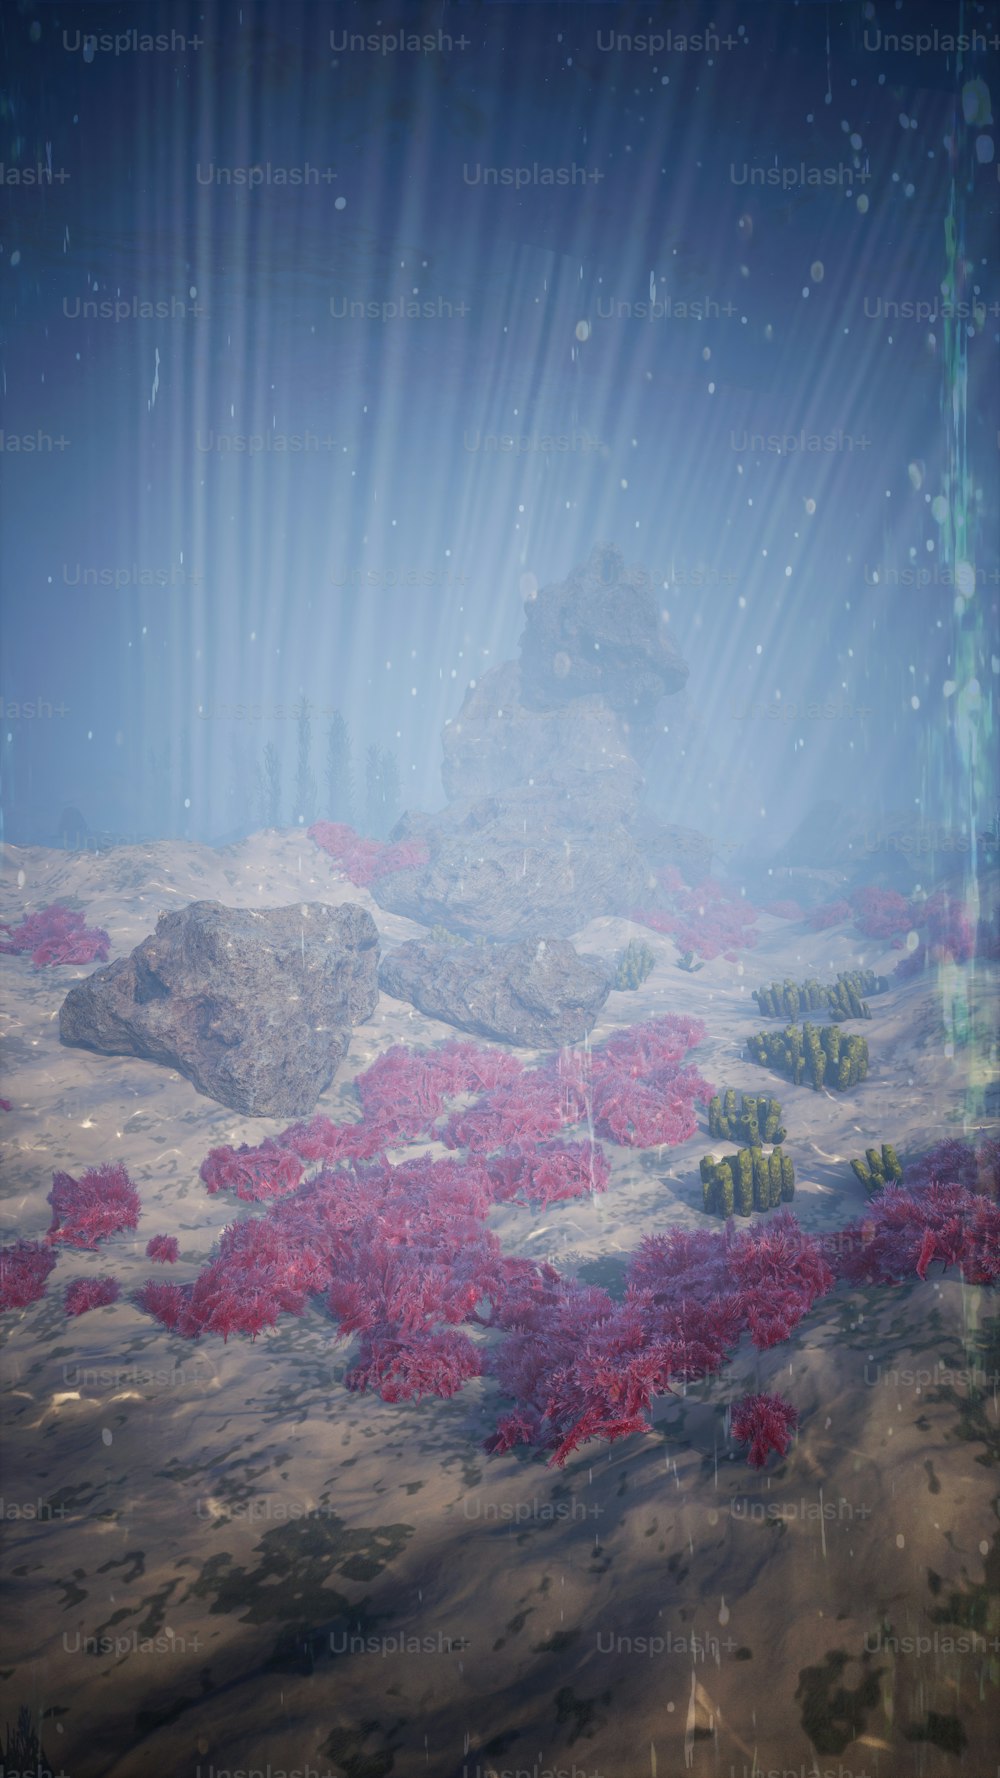 Una escena submarina con plantas rojas y rocas